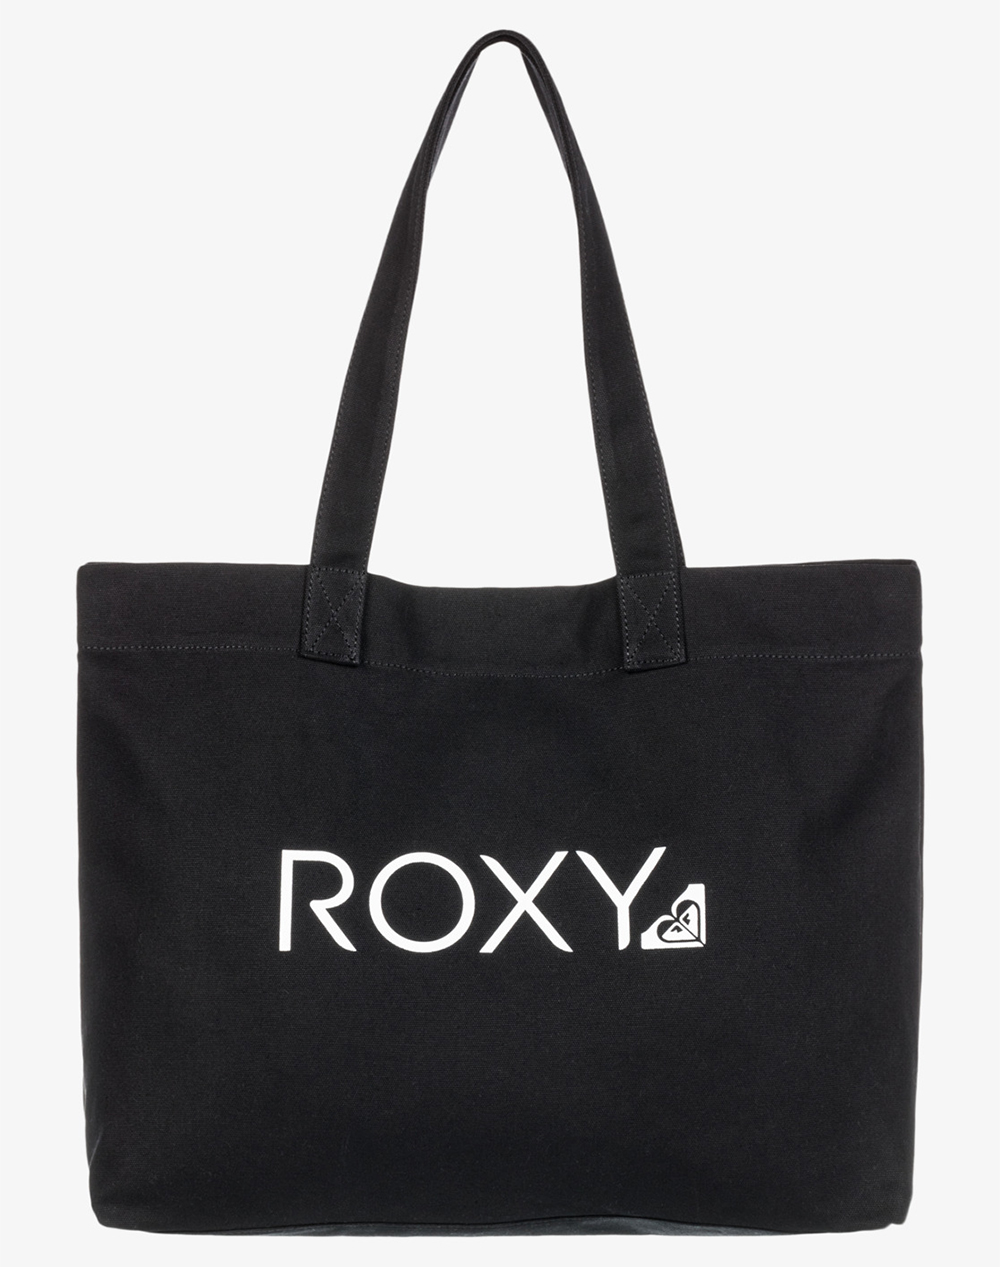 ROXY GO FOR IT ΤΣΑΝΤΑ ΓΥΝΑΙΚΕΙΟ (Διαστάσεις: 40 x 17 x 34 εκ)